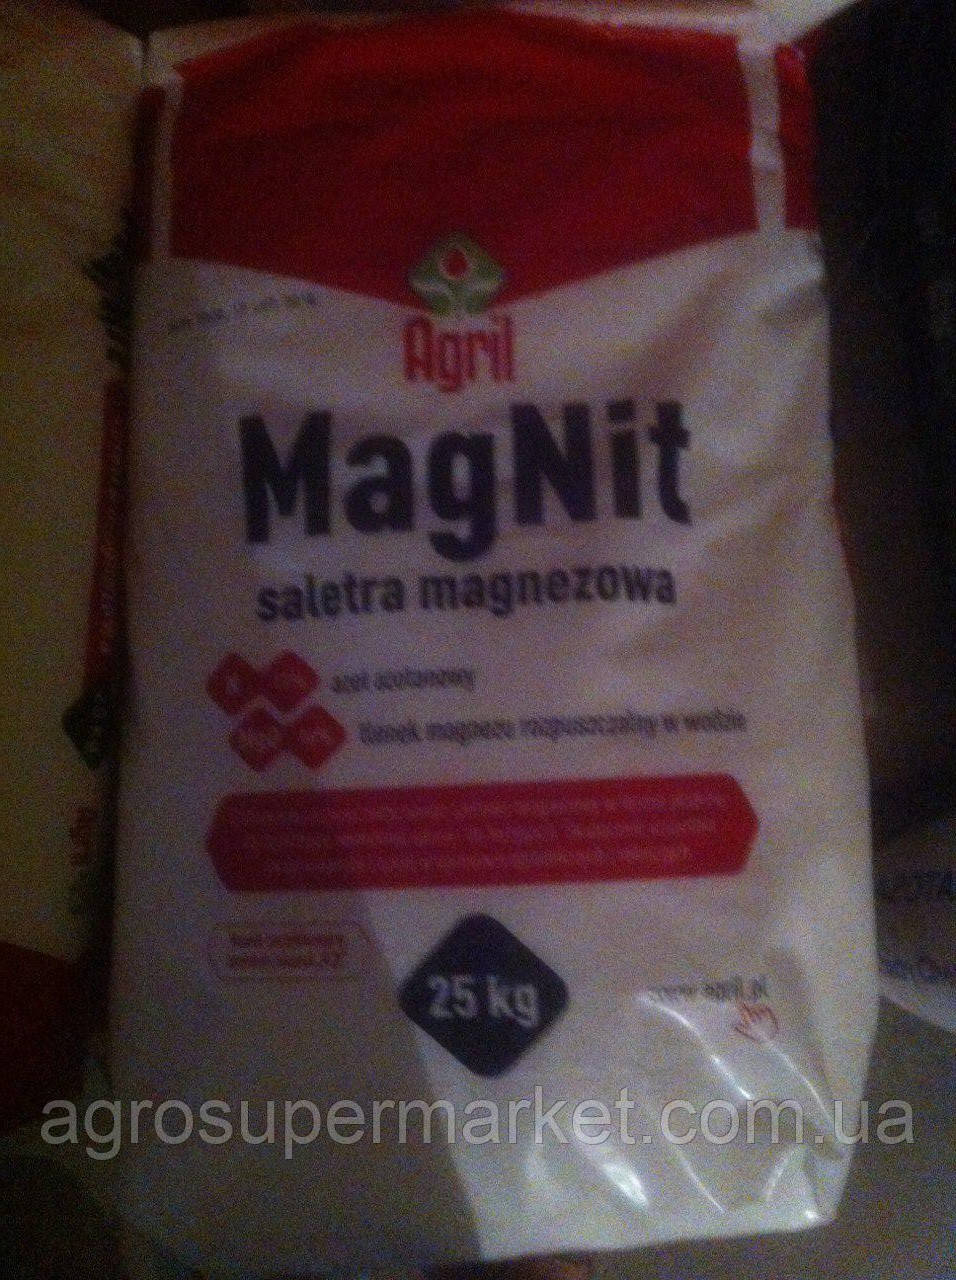 Нітрат магнію Магніт MagNit — магнієва селітра Агріл Agril Польща